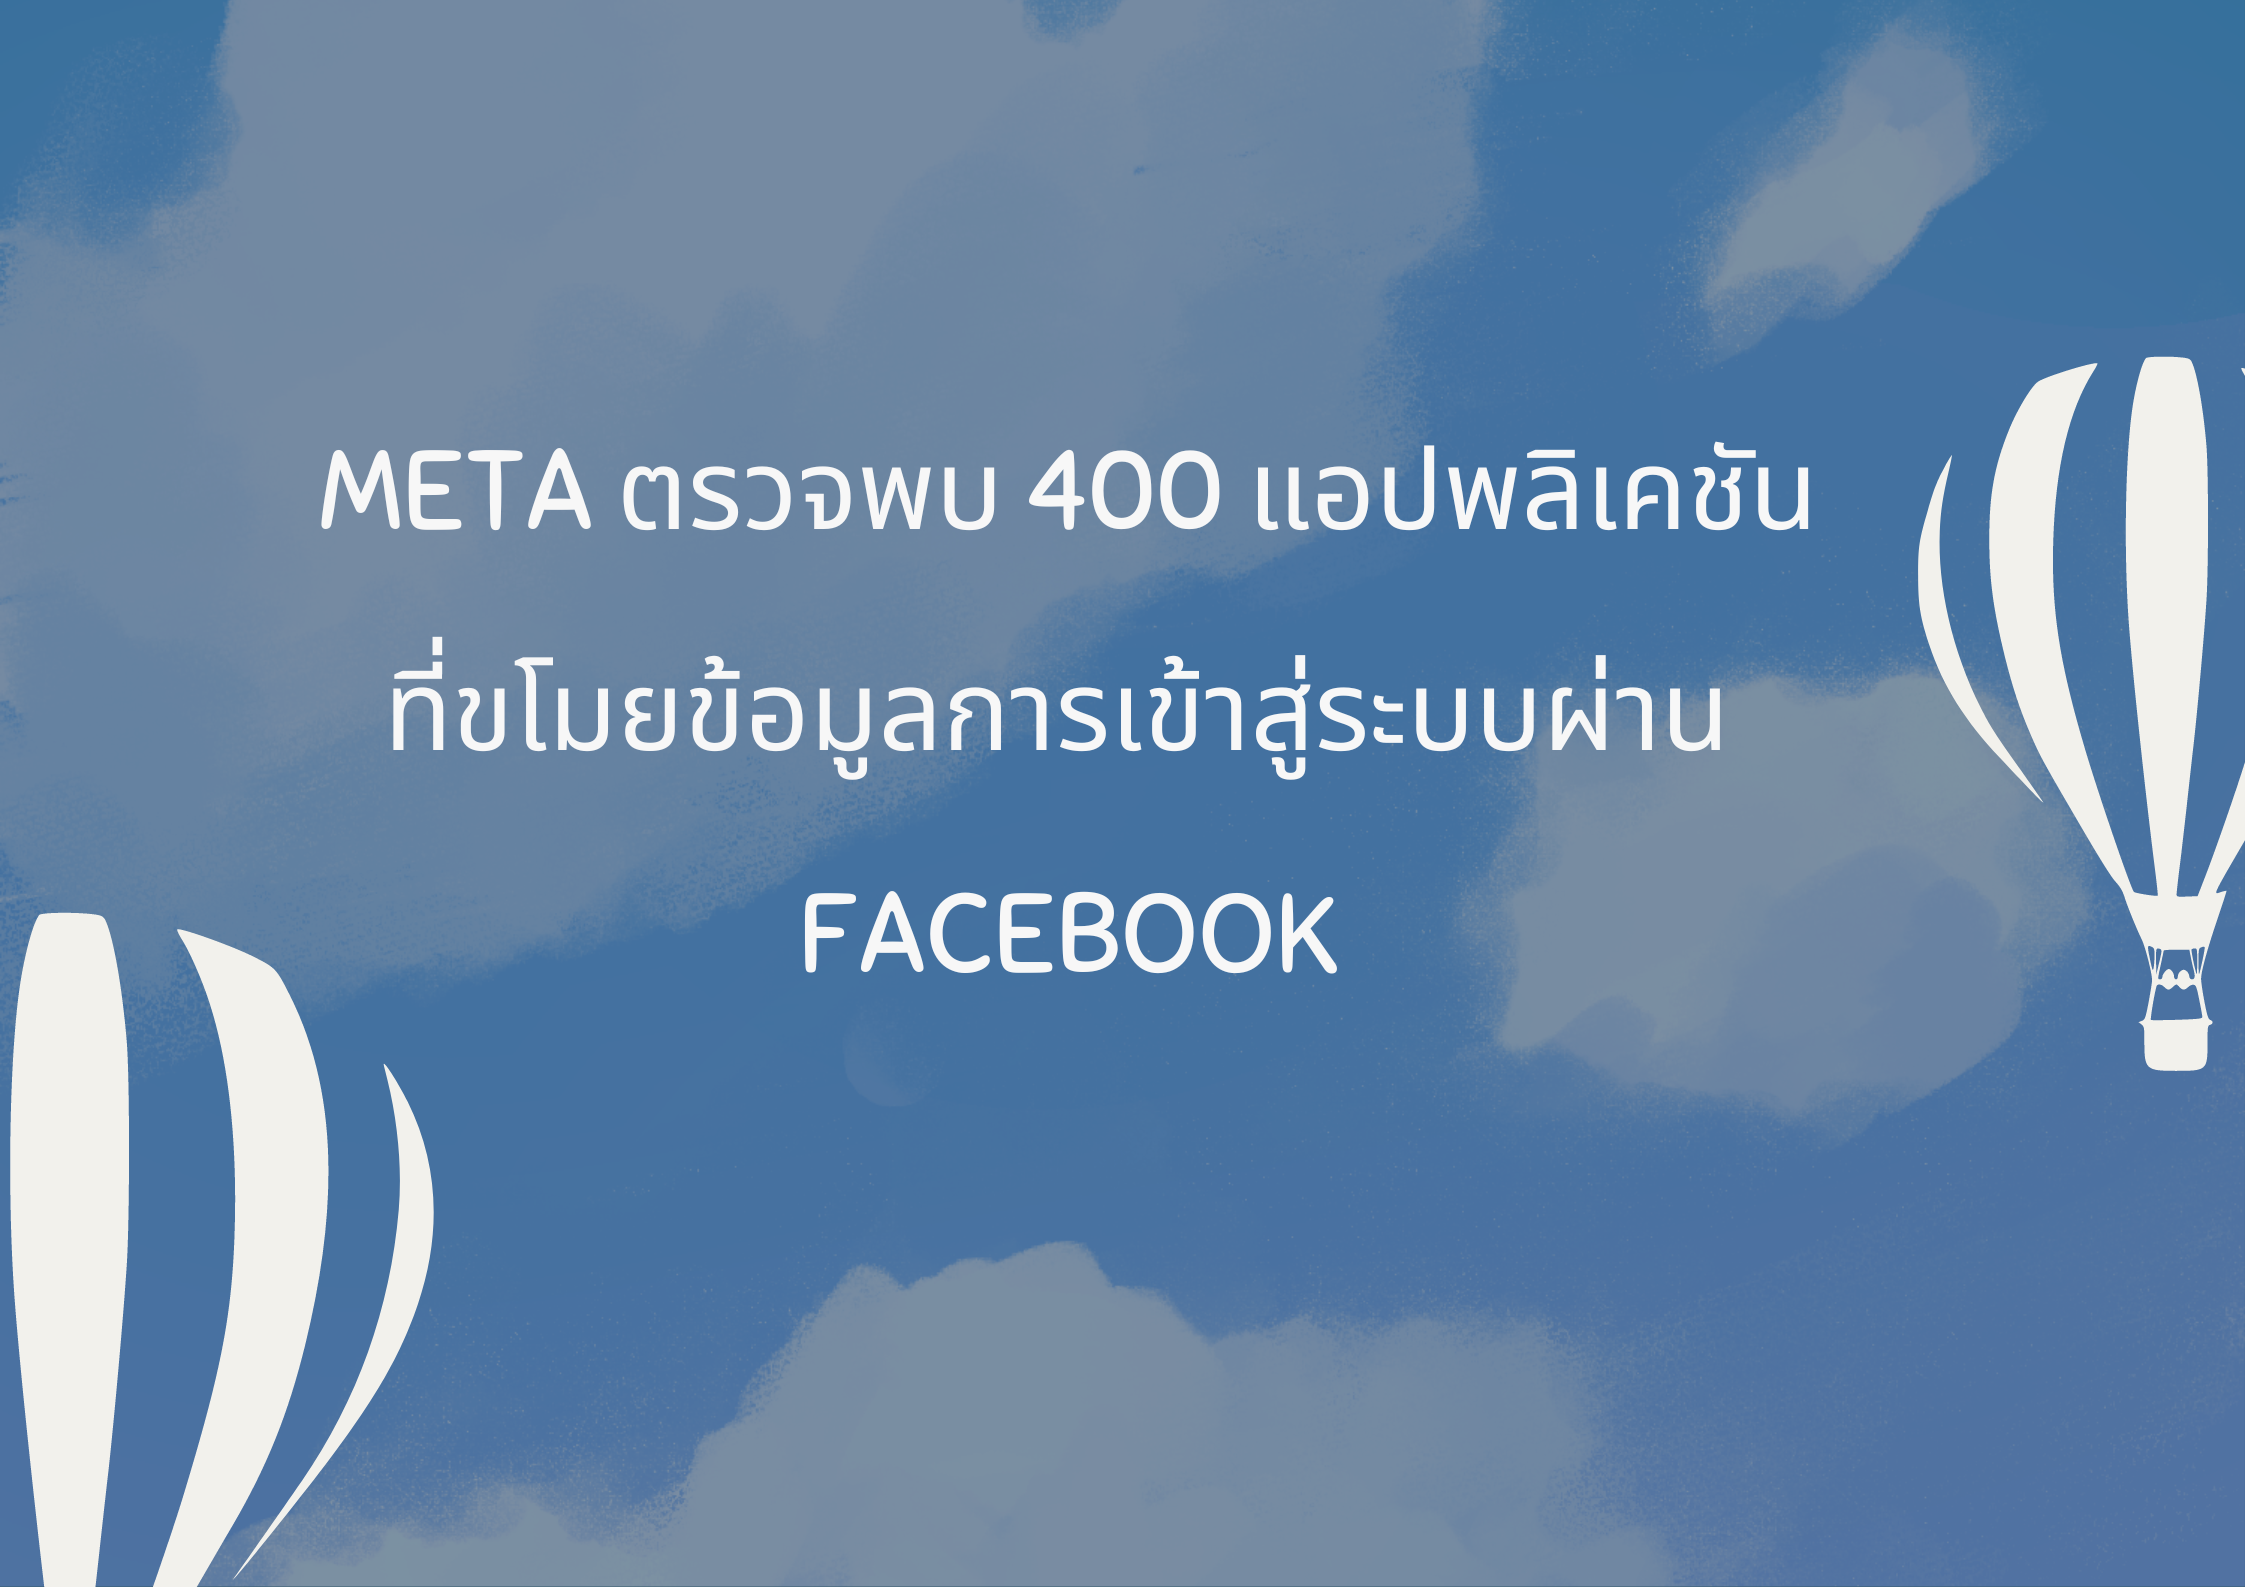 Meta ตรวจพบ 400 แอปพลิเคชัน  ที่ขโมยข้อมูลการเข้าสู่ระบบผ่าน   Facebook